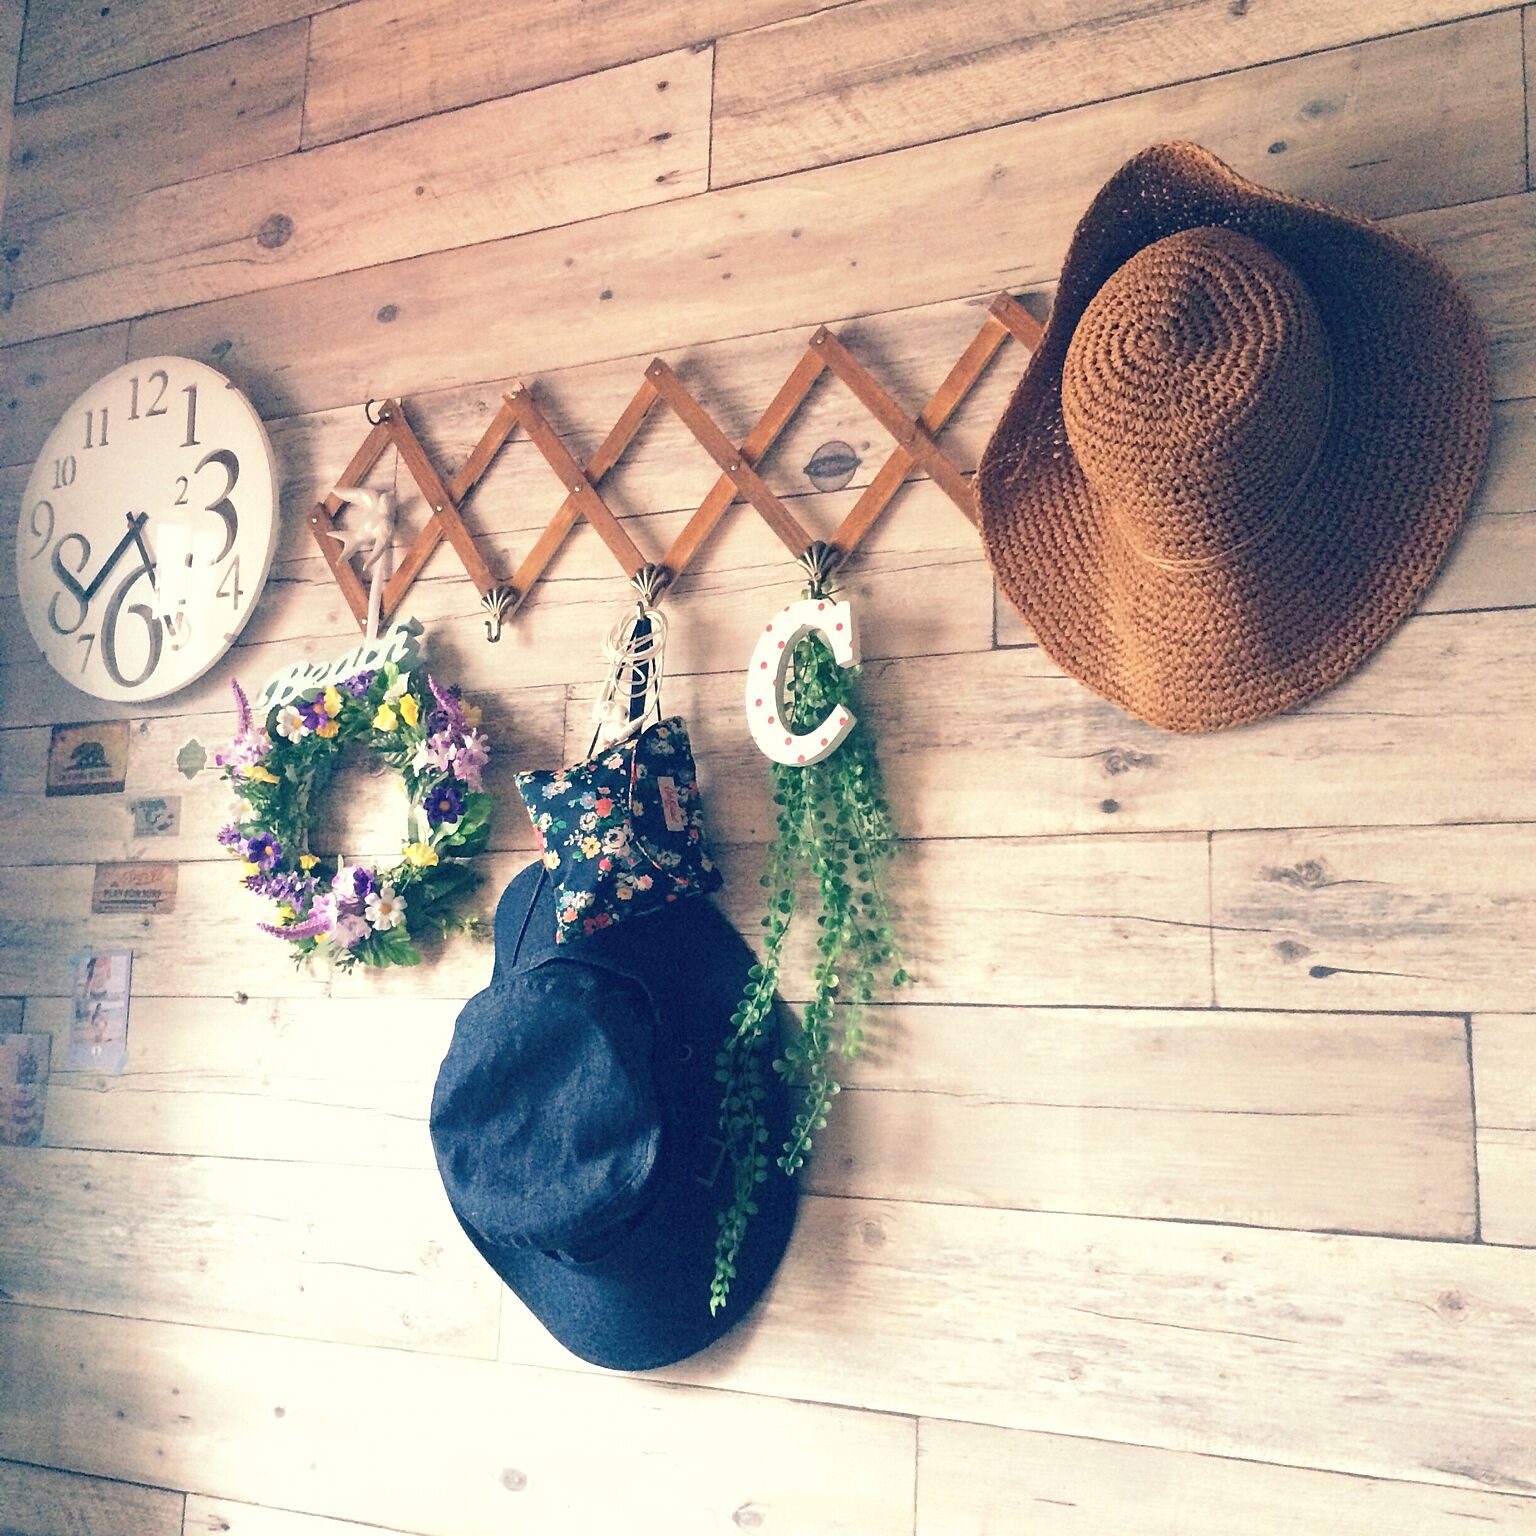 壁のナチュラルな感じと高さを変えて帽子をかけ、植物など癒しグッズを飾るのも素敵です。